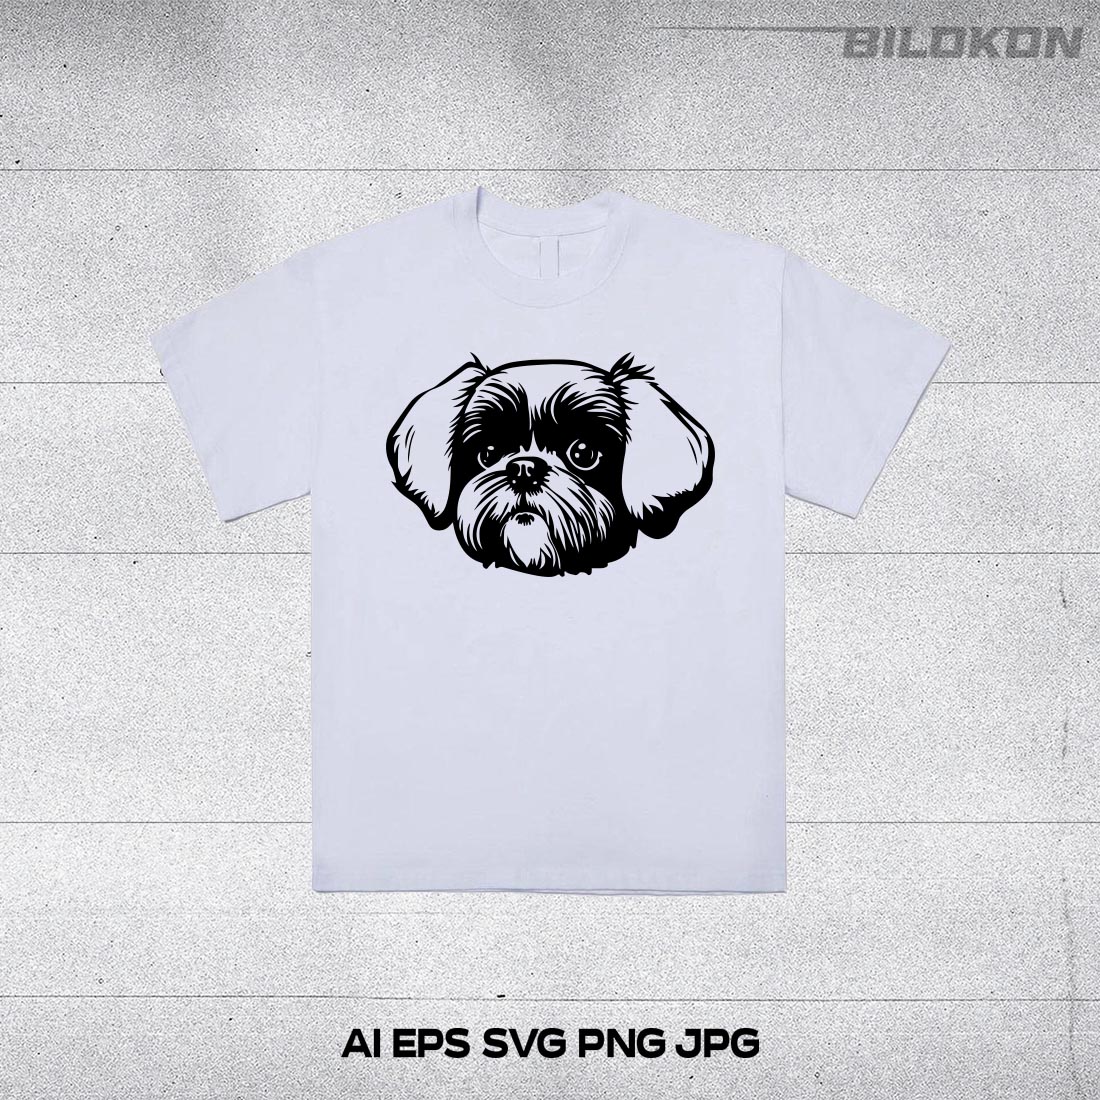 Shih tzu dog face , SVG, Vector, Illustration preview image.